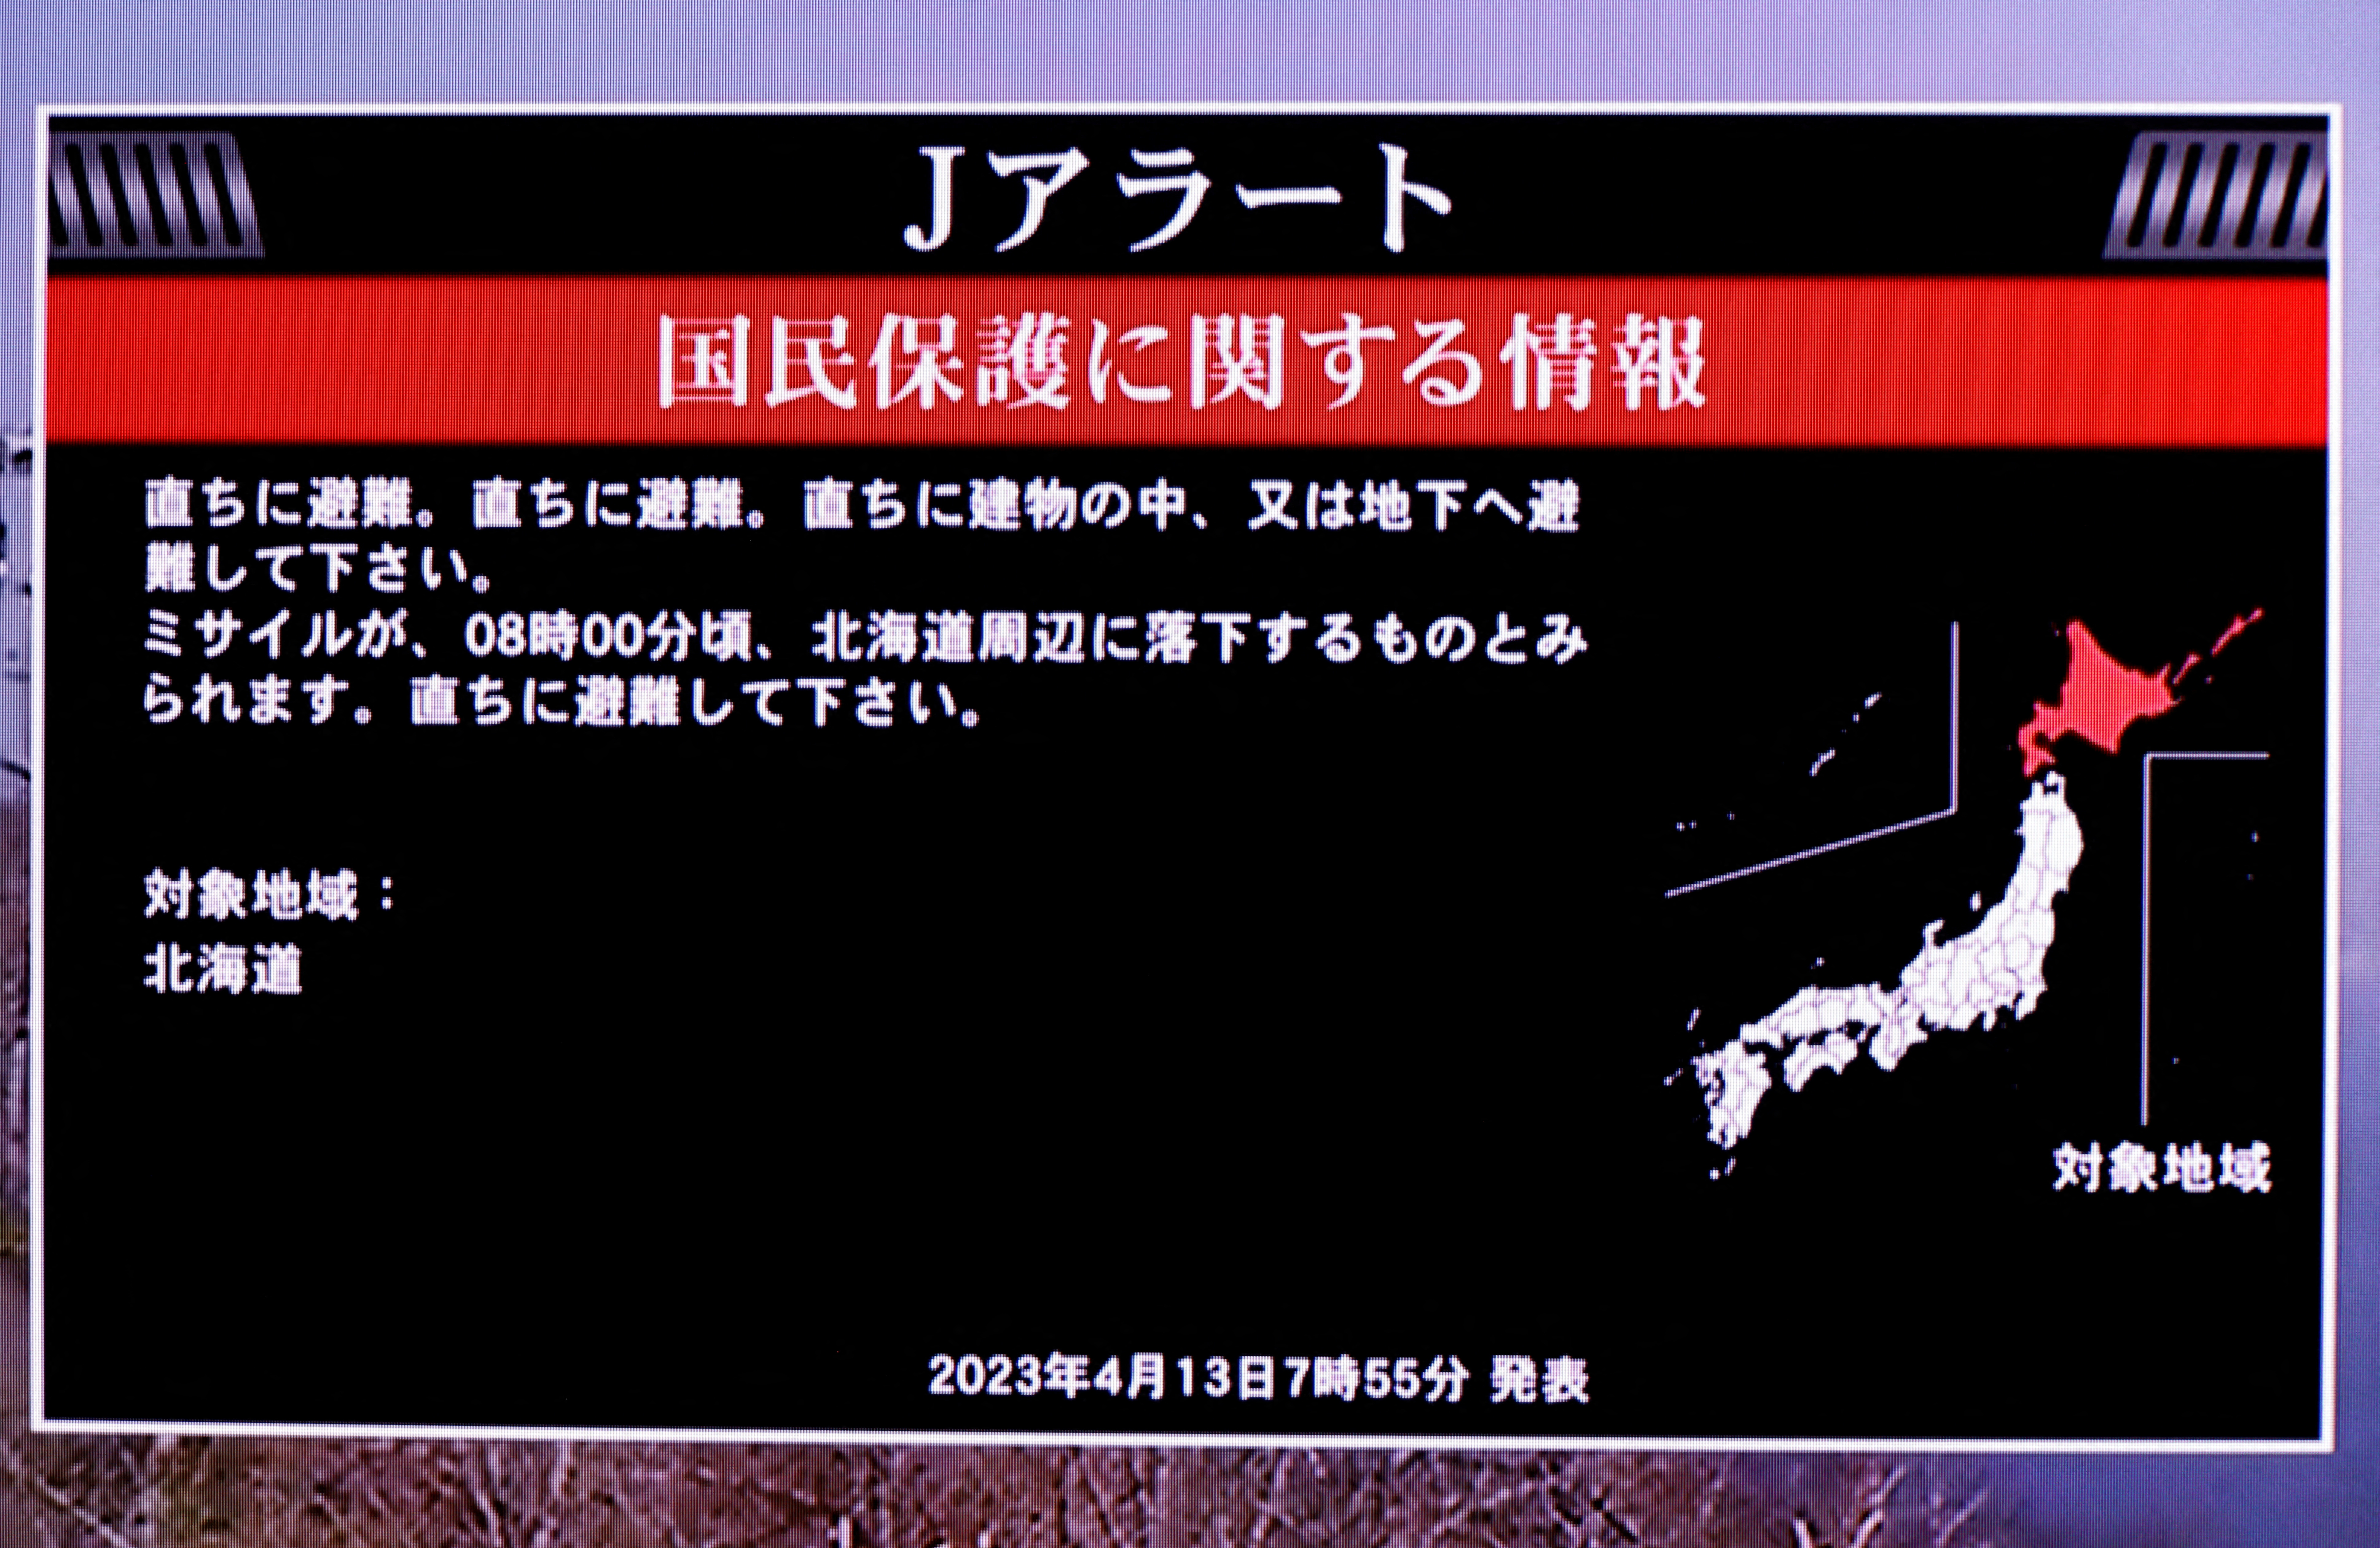 Una pantalla de televisión muestra un mensaje de advertencia llamado "J-alert" después de que el gobierno japonés emitiera una alerta, tras el lanzamiento de un misil balístico por parte de Corea del Norte, en esta foto tomada en Tokio, Japón el 13 de abril de 2023. REUTERS/Issei Kato
